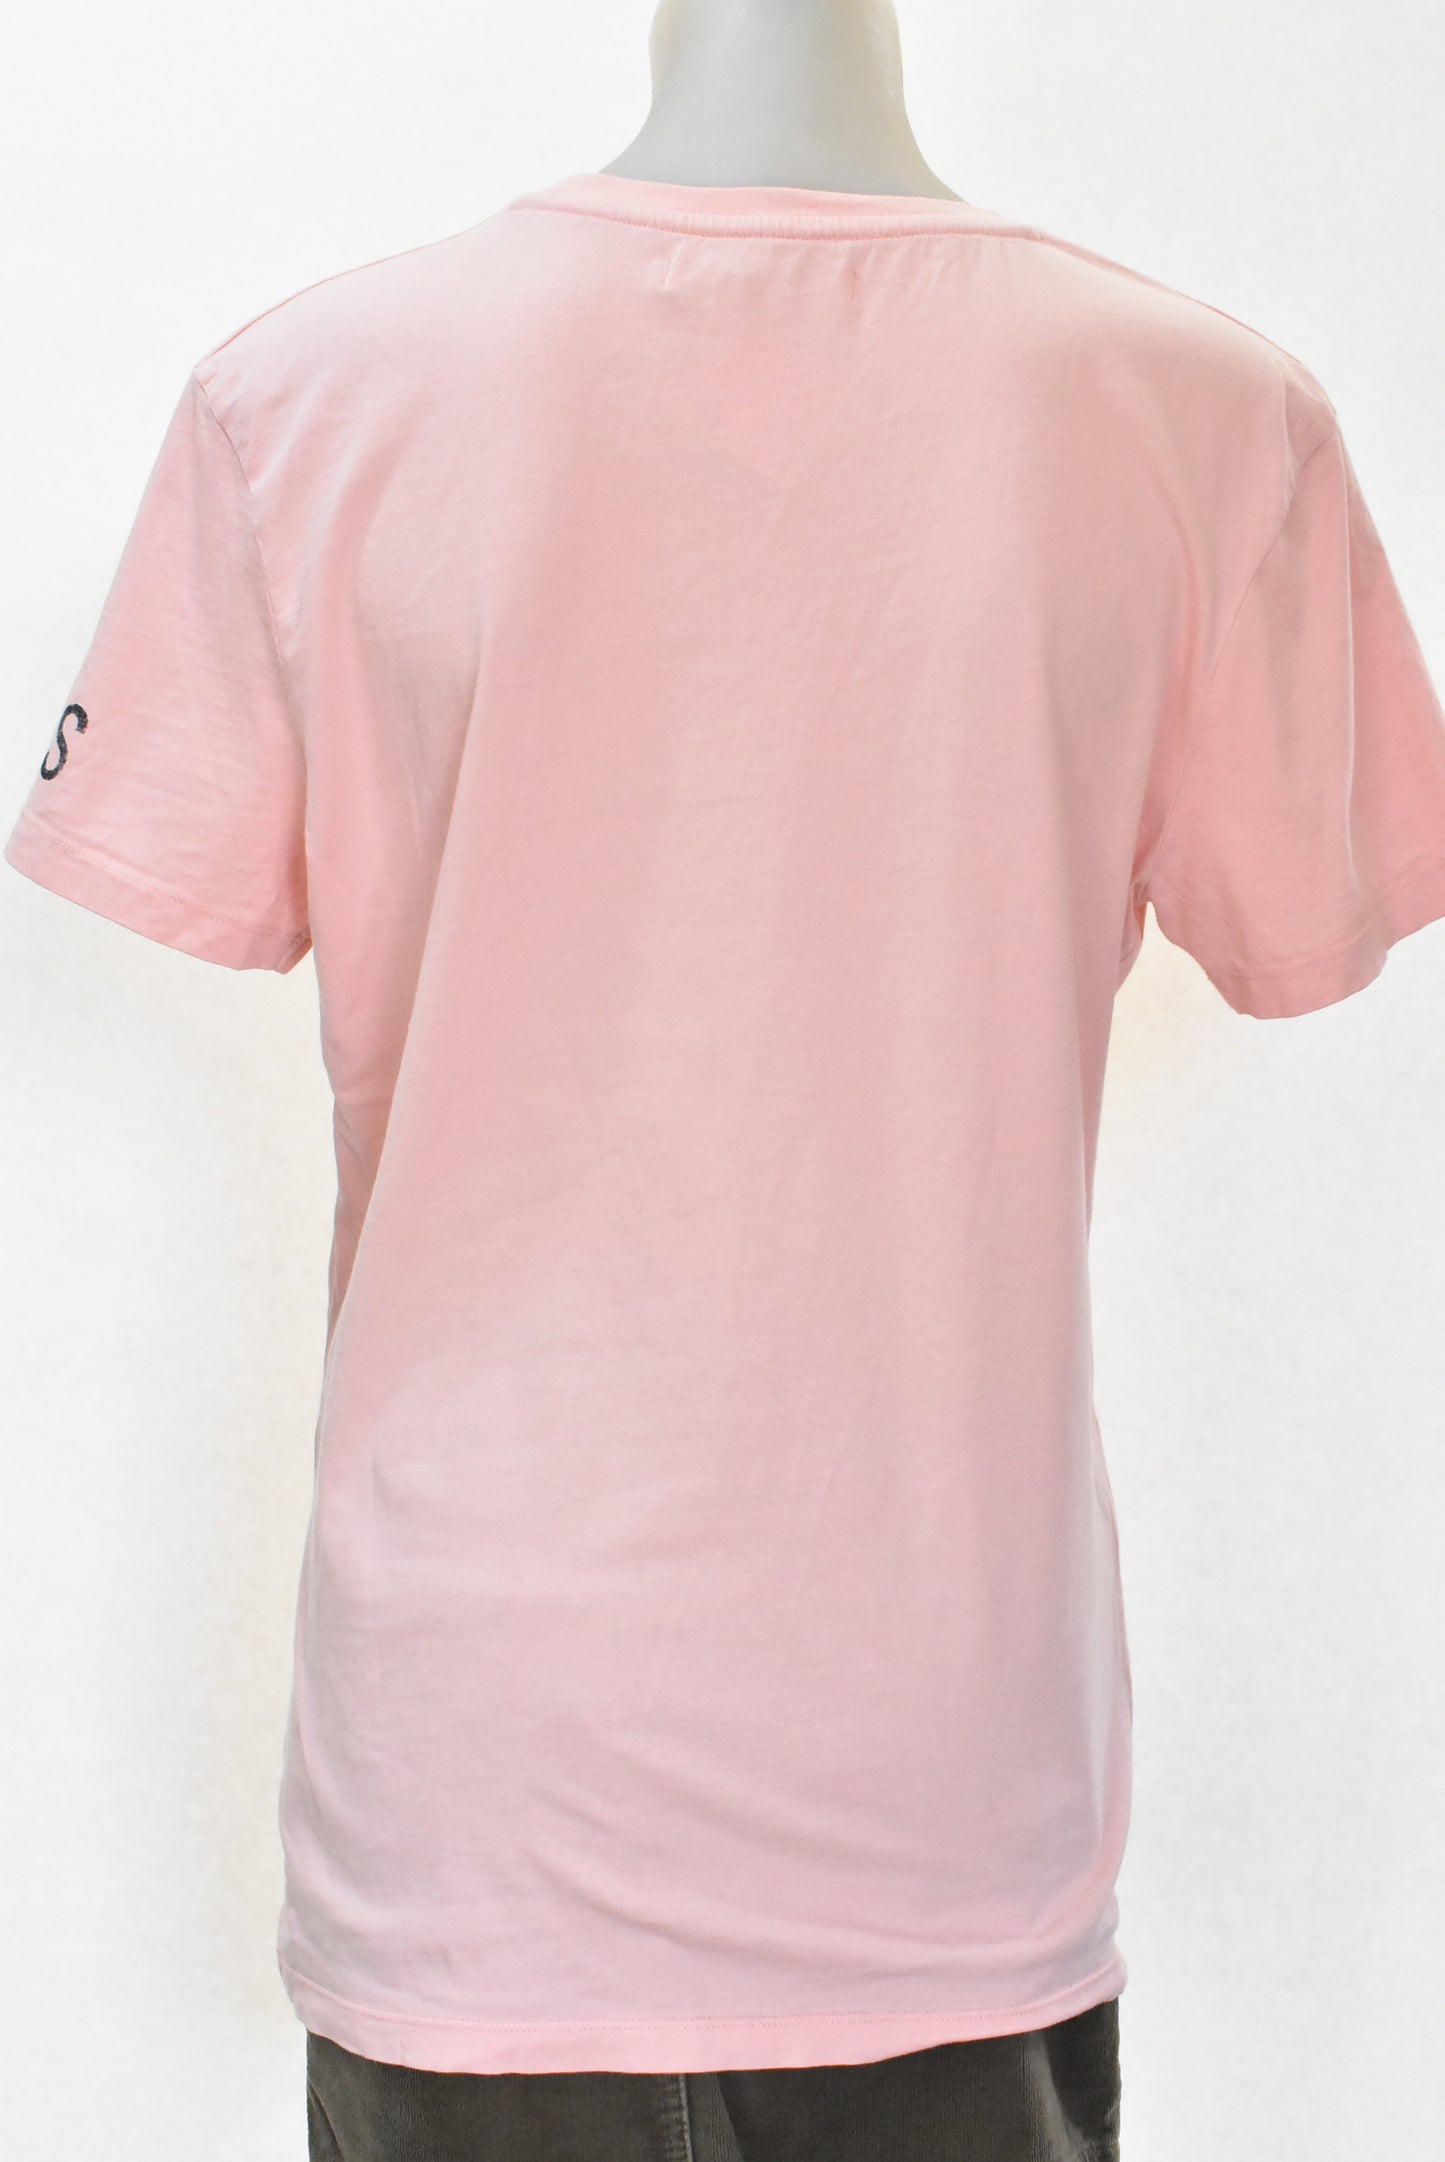 Calvin Klein pink tshirt, XL